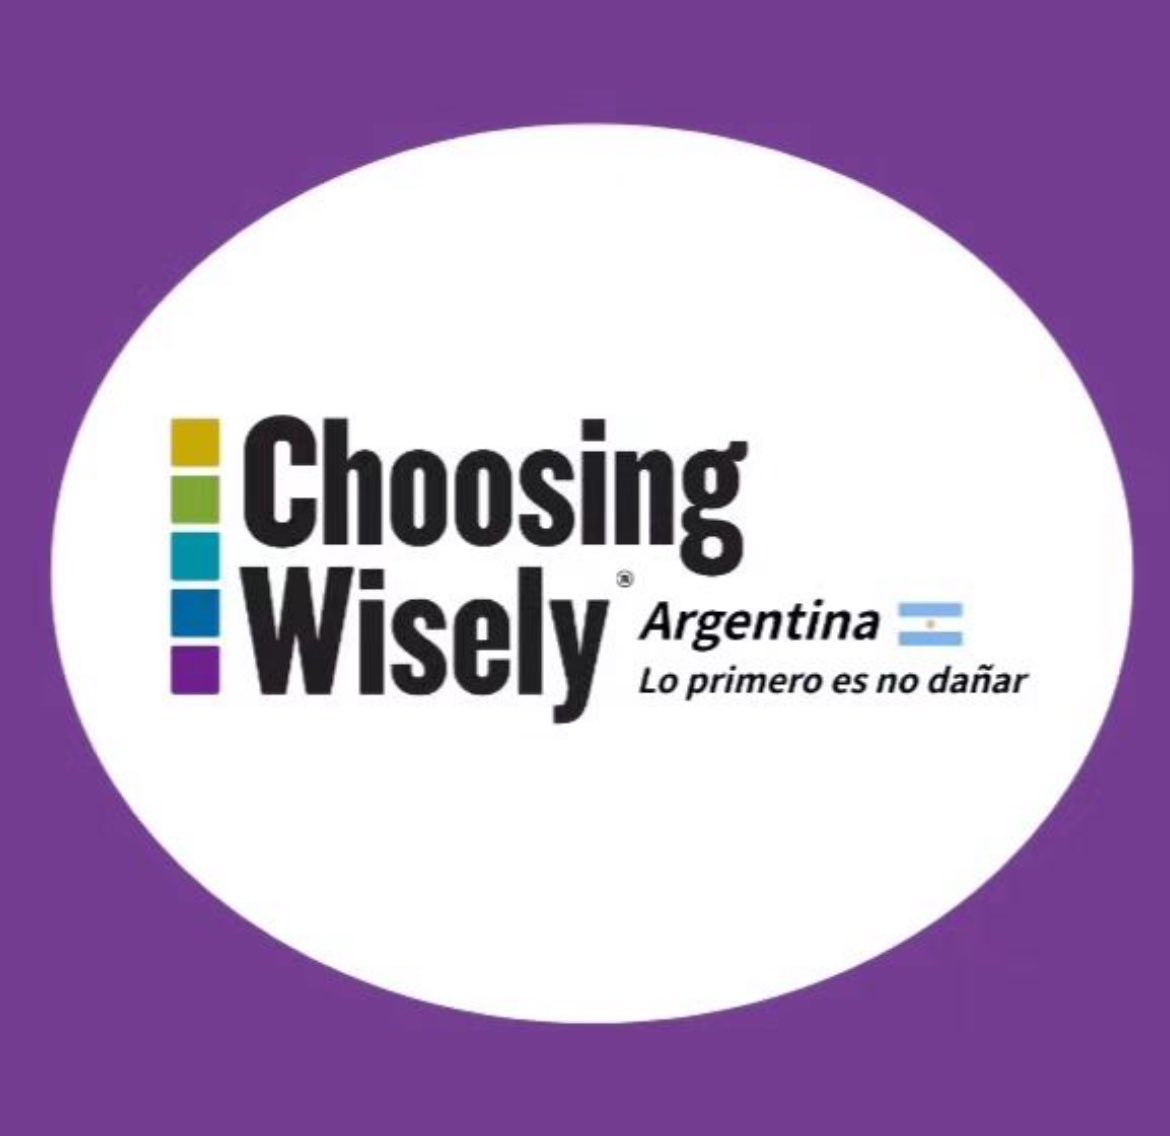 Sabias que la iniciativa Choosing Wisely ya tiene su capitulo en Argentina? Hacemos hincapie en la prevención cuaternaria y en la des-implementación de practicas de bajo valor en salud. Como asociación fundadora, te invitamos a conocer mas y sumarte! choosingwisely.com.ar